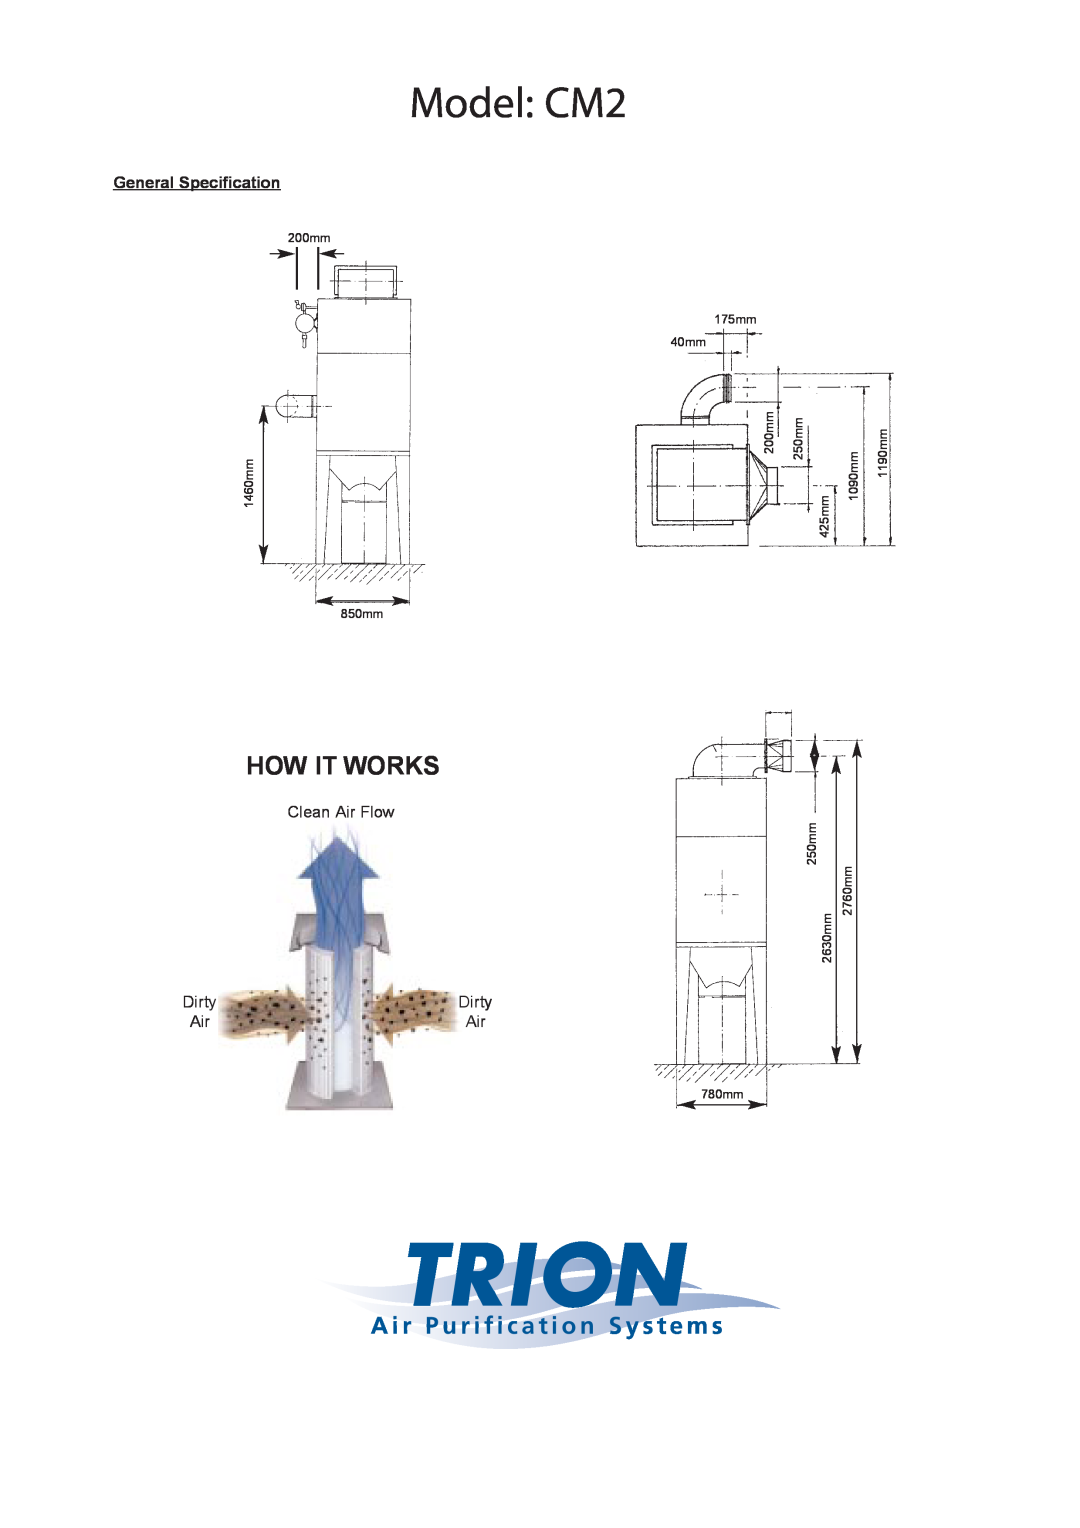 Trion CM4, CM6 Model CM2, How It Works, A i r P u r i f i c a t i o n S y s t e m s, General Specification, Clean Air Flow 